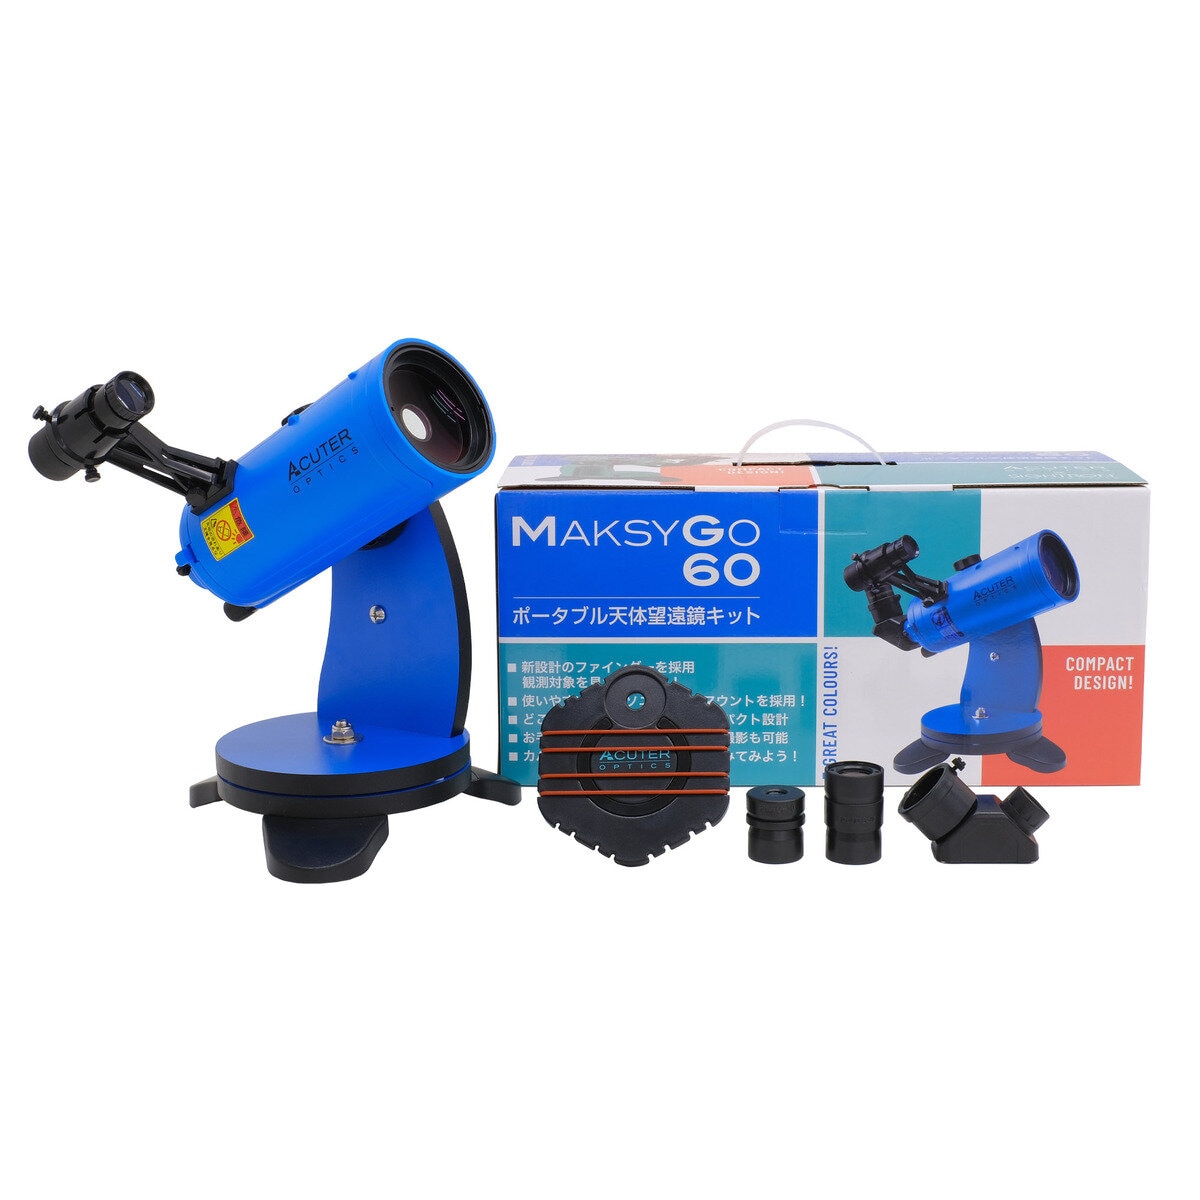 サイトロン MAKSY GO (マクシー・ゴー）60 ポータブル天体望遠鏡キット